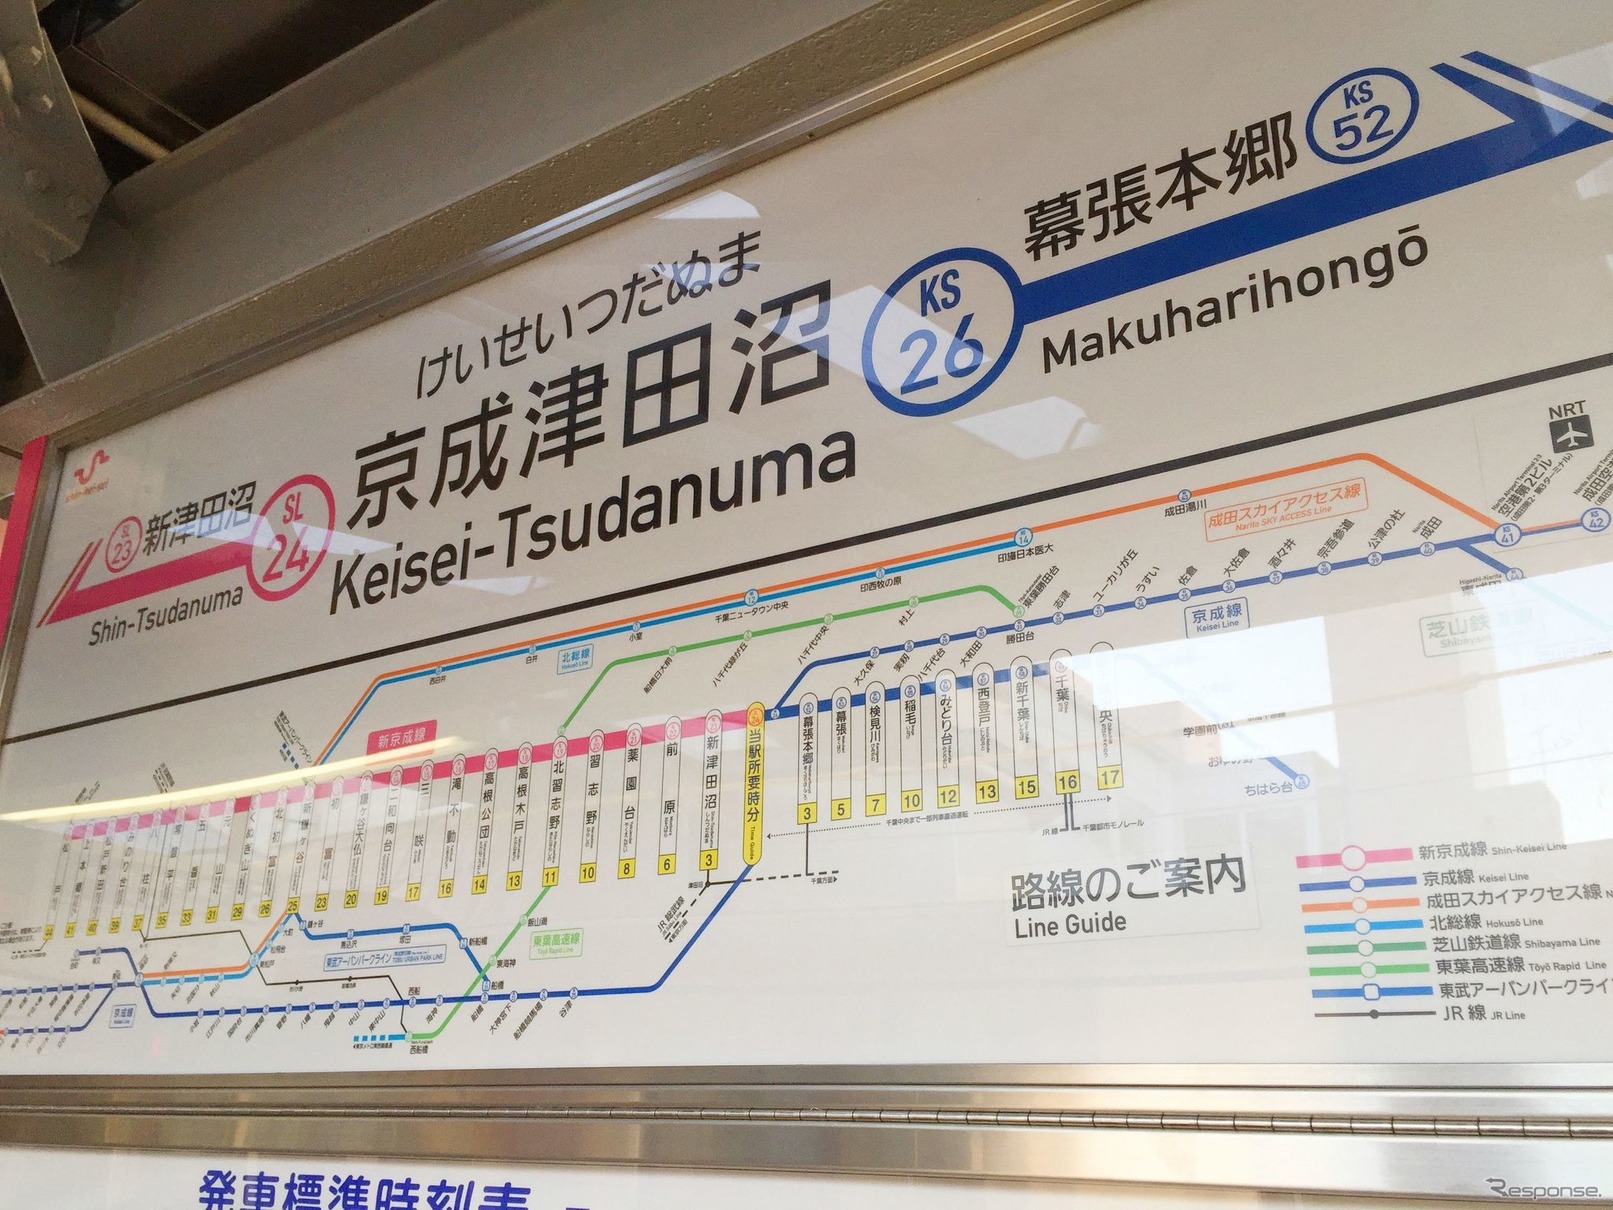 京成津田沼駅に掲げられた路線図。かつて、北習志野～京成津田沼間の各駅から勝田台へは新京成と京成の乗継ぎしかなかったが、東葉高速鉄道が開業した1996年4月以後は競合が発生している。もっとも、北習志野から勝田台方面へは、東葉高速鉄道が12分程度であるのに対して、新京成・京成が30分程度を要するため、10円安いアドバンテージだけでは時間的に無意味だったのかもしれない。